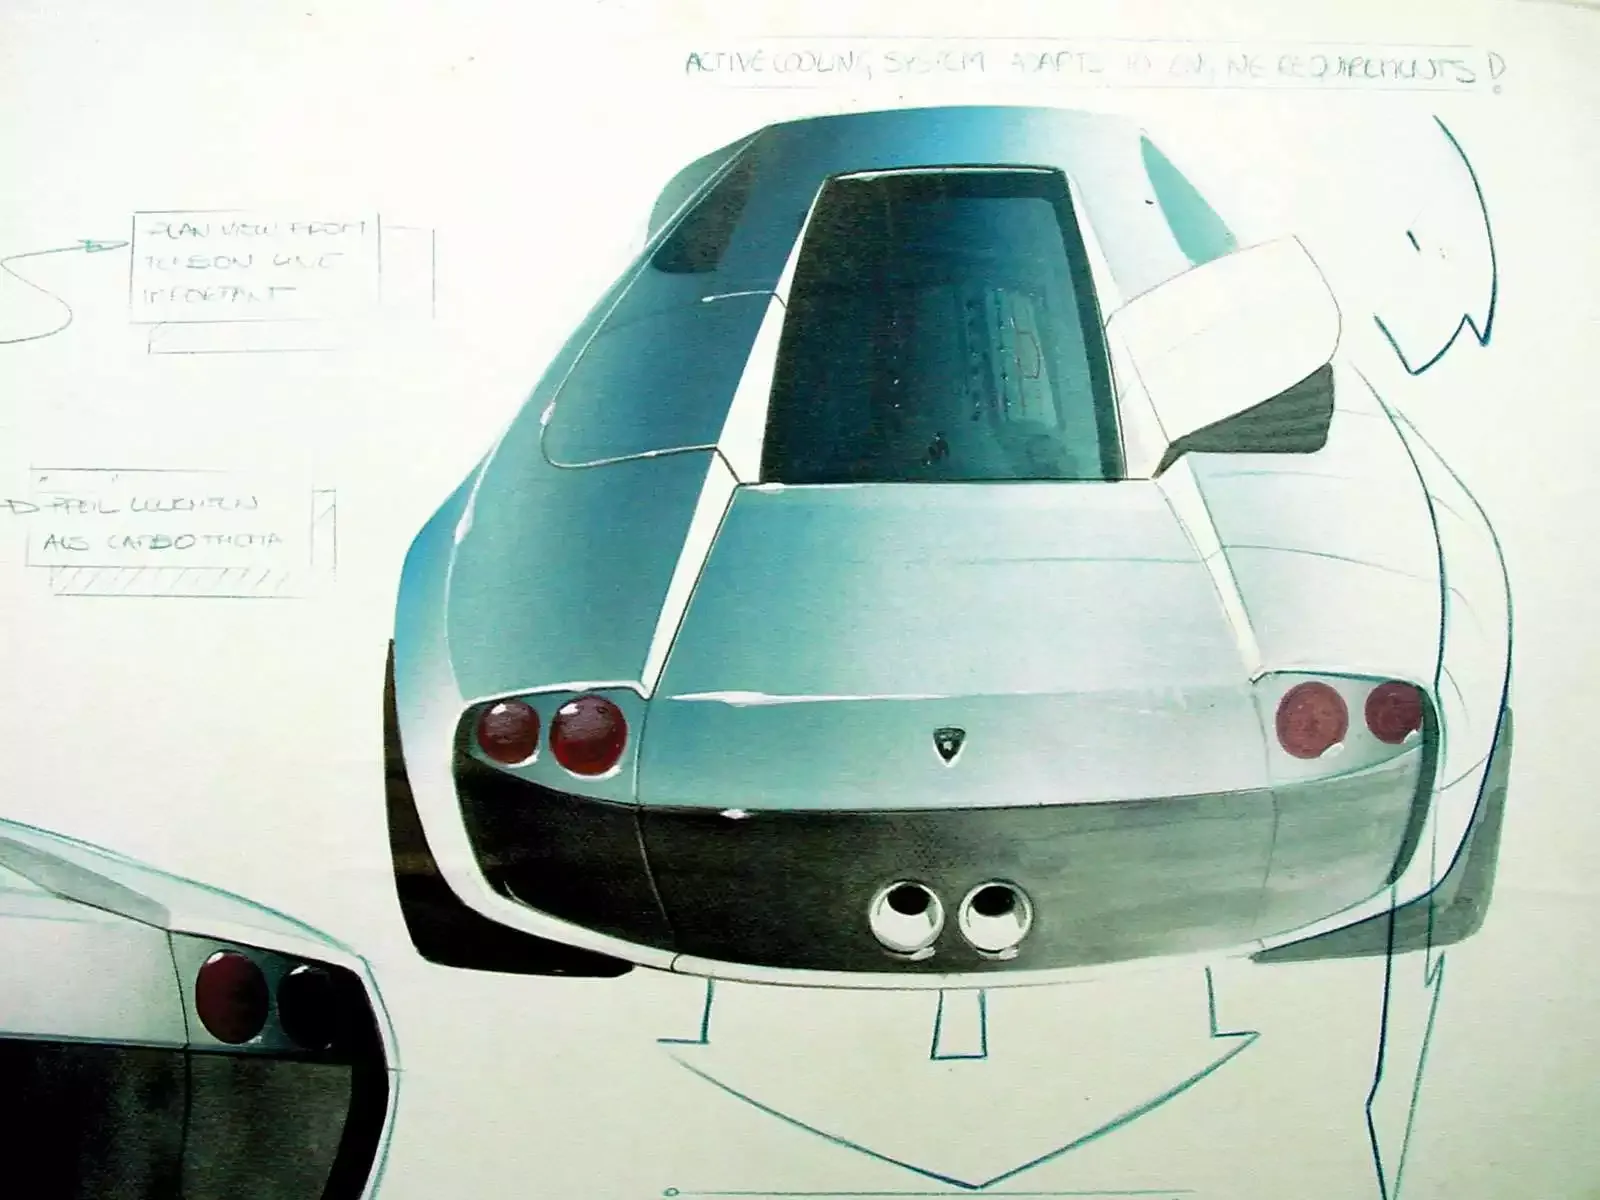 Hình ảnh siêu xe Lamborghini Murcielago Sketch 2002 & nội ngoại thất